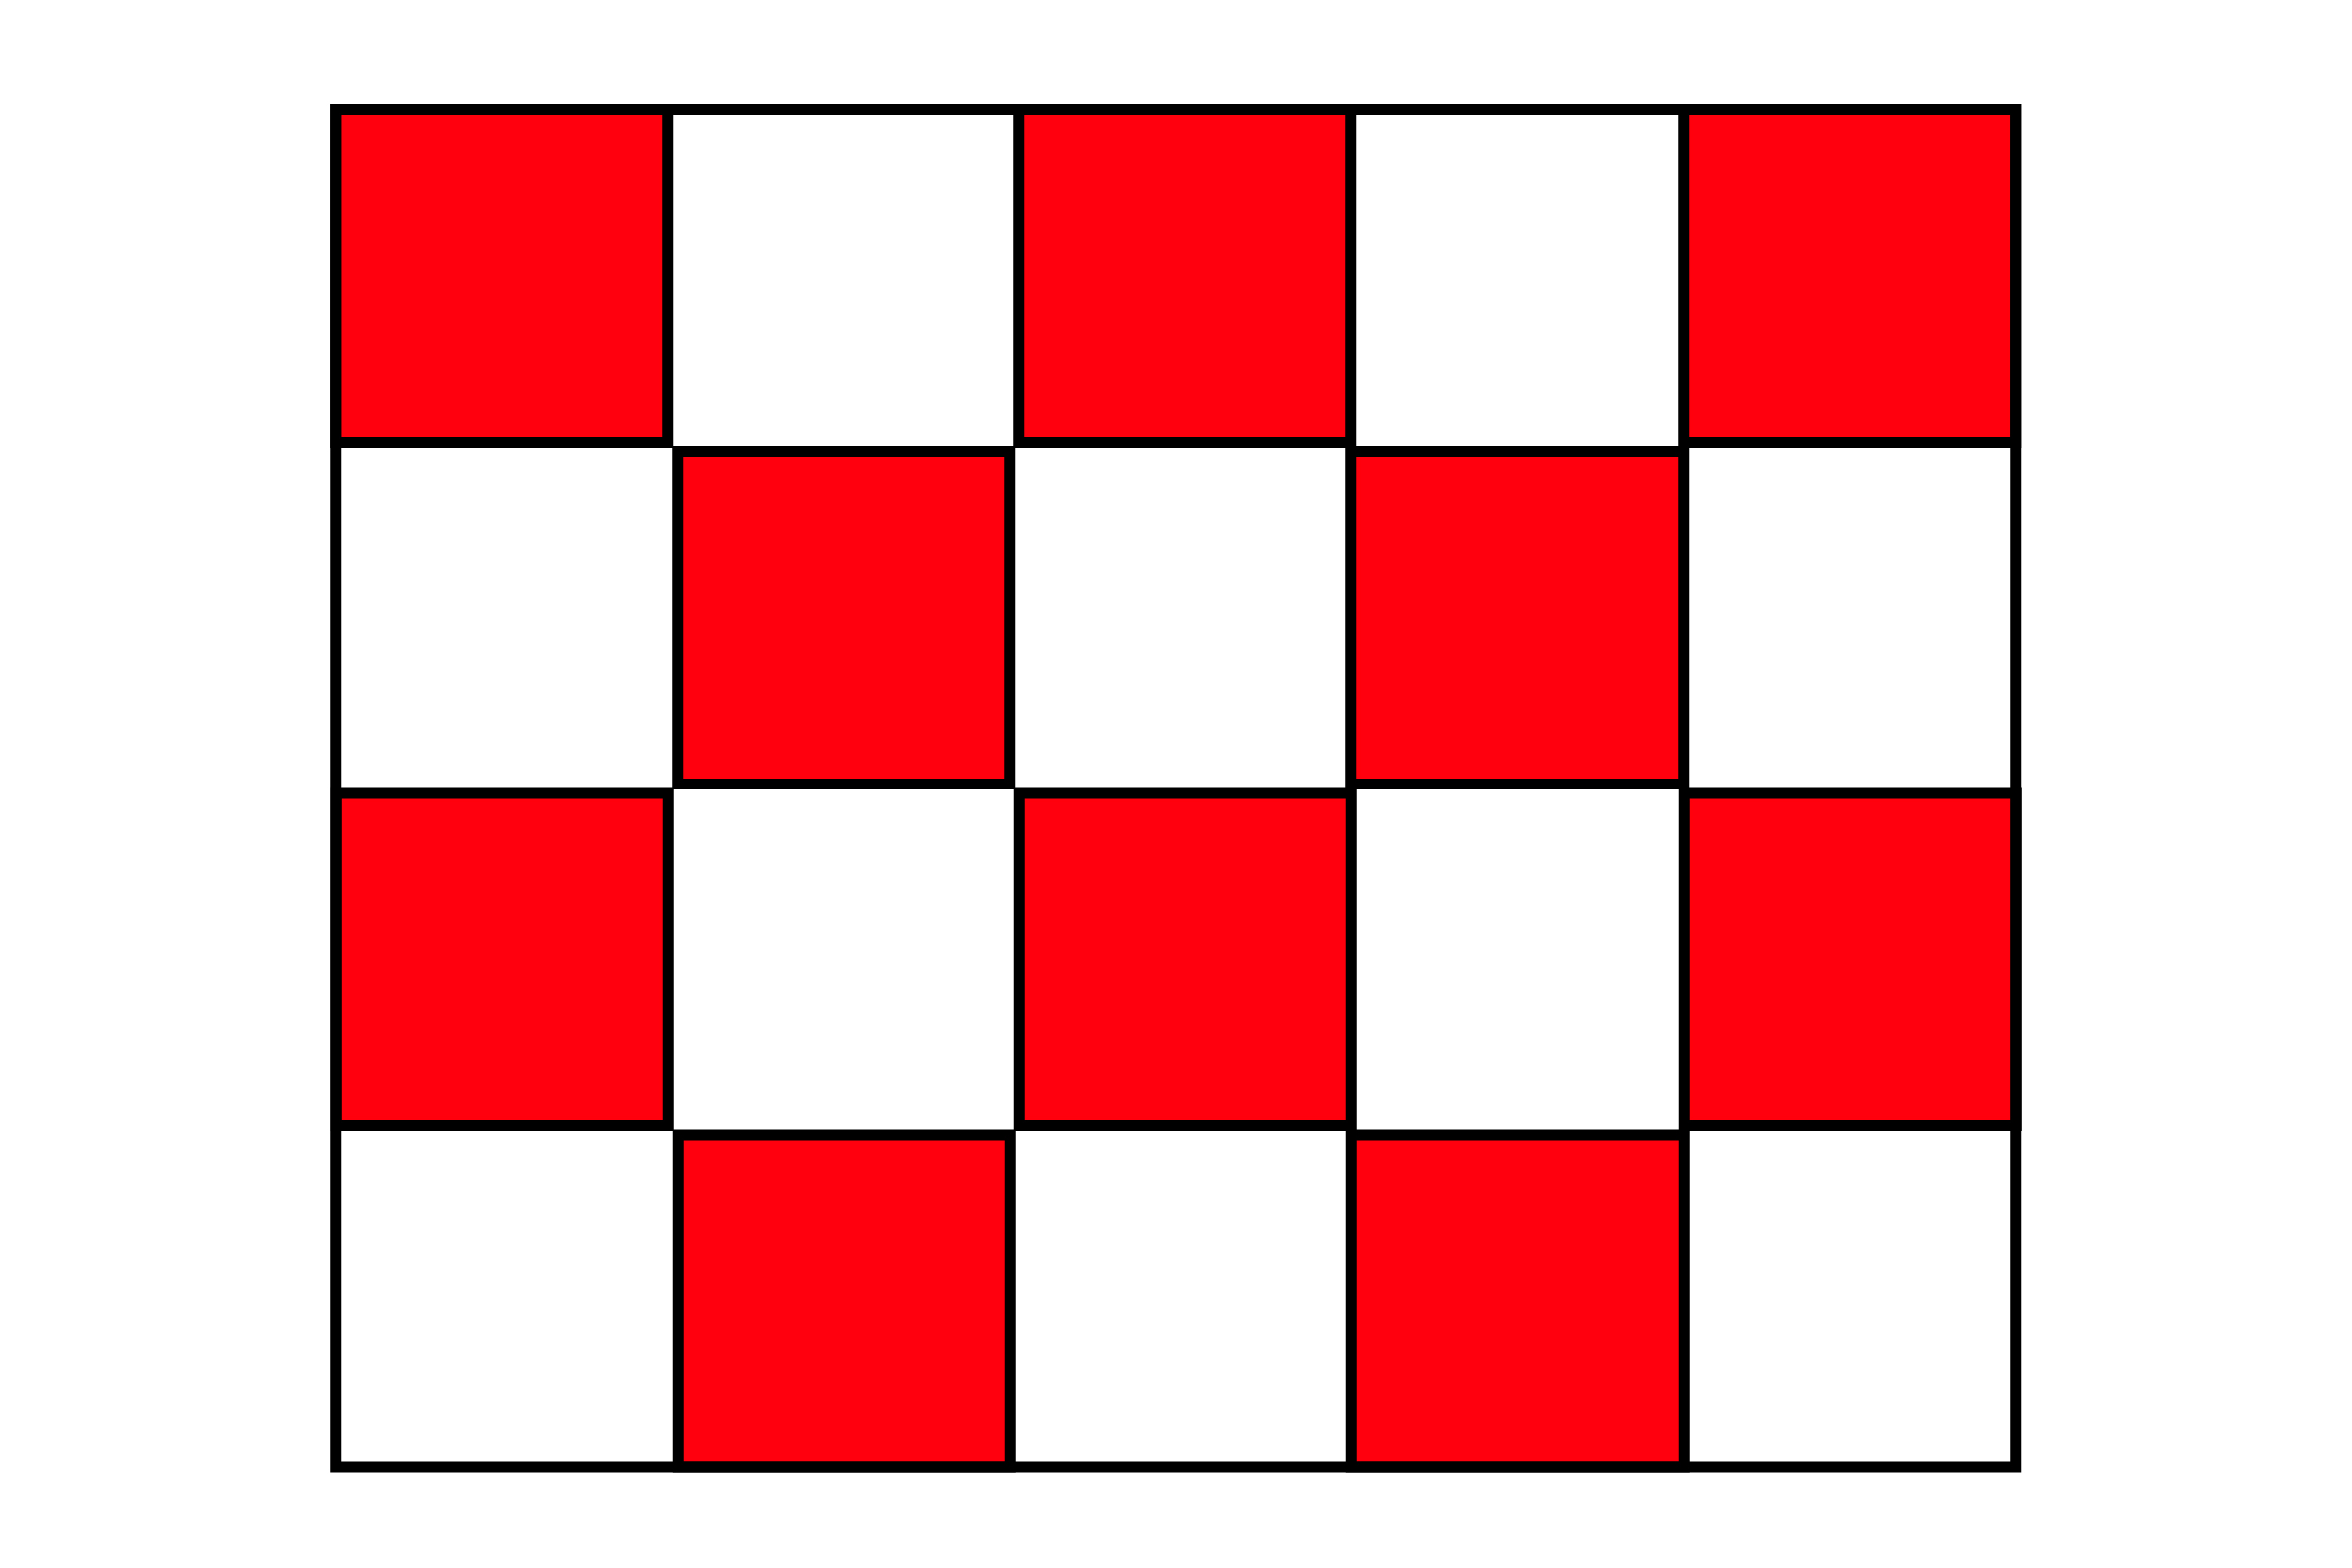 Squares make tessellation